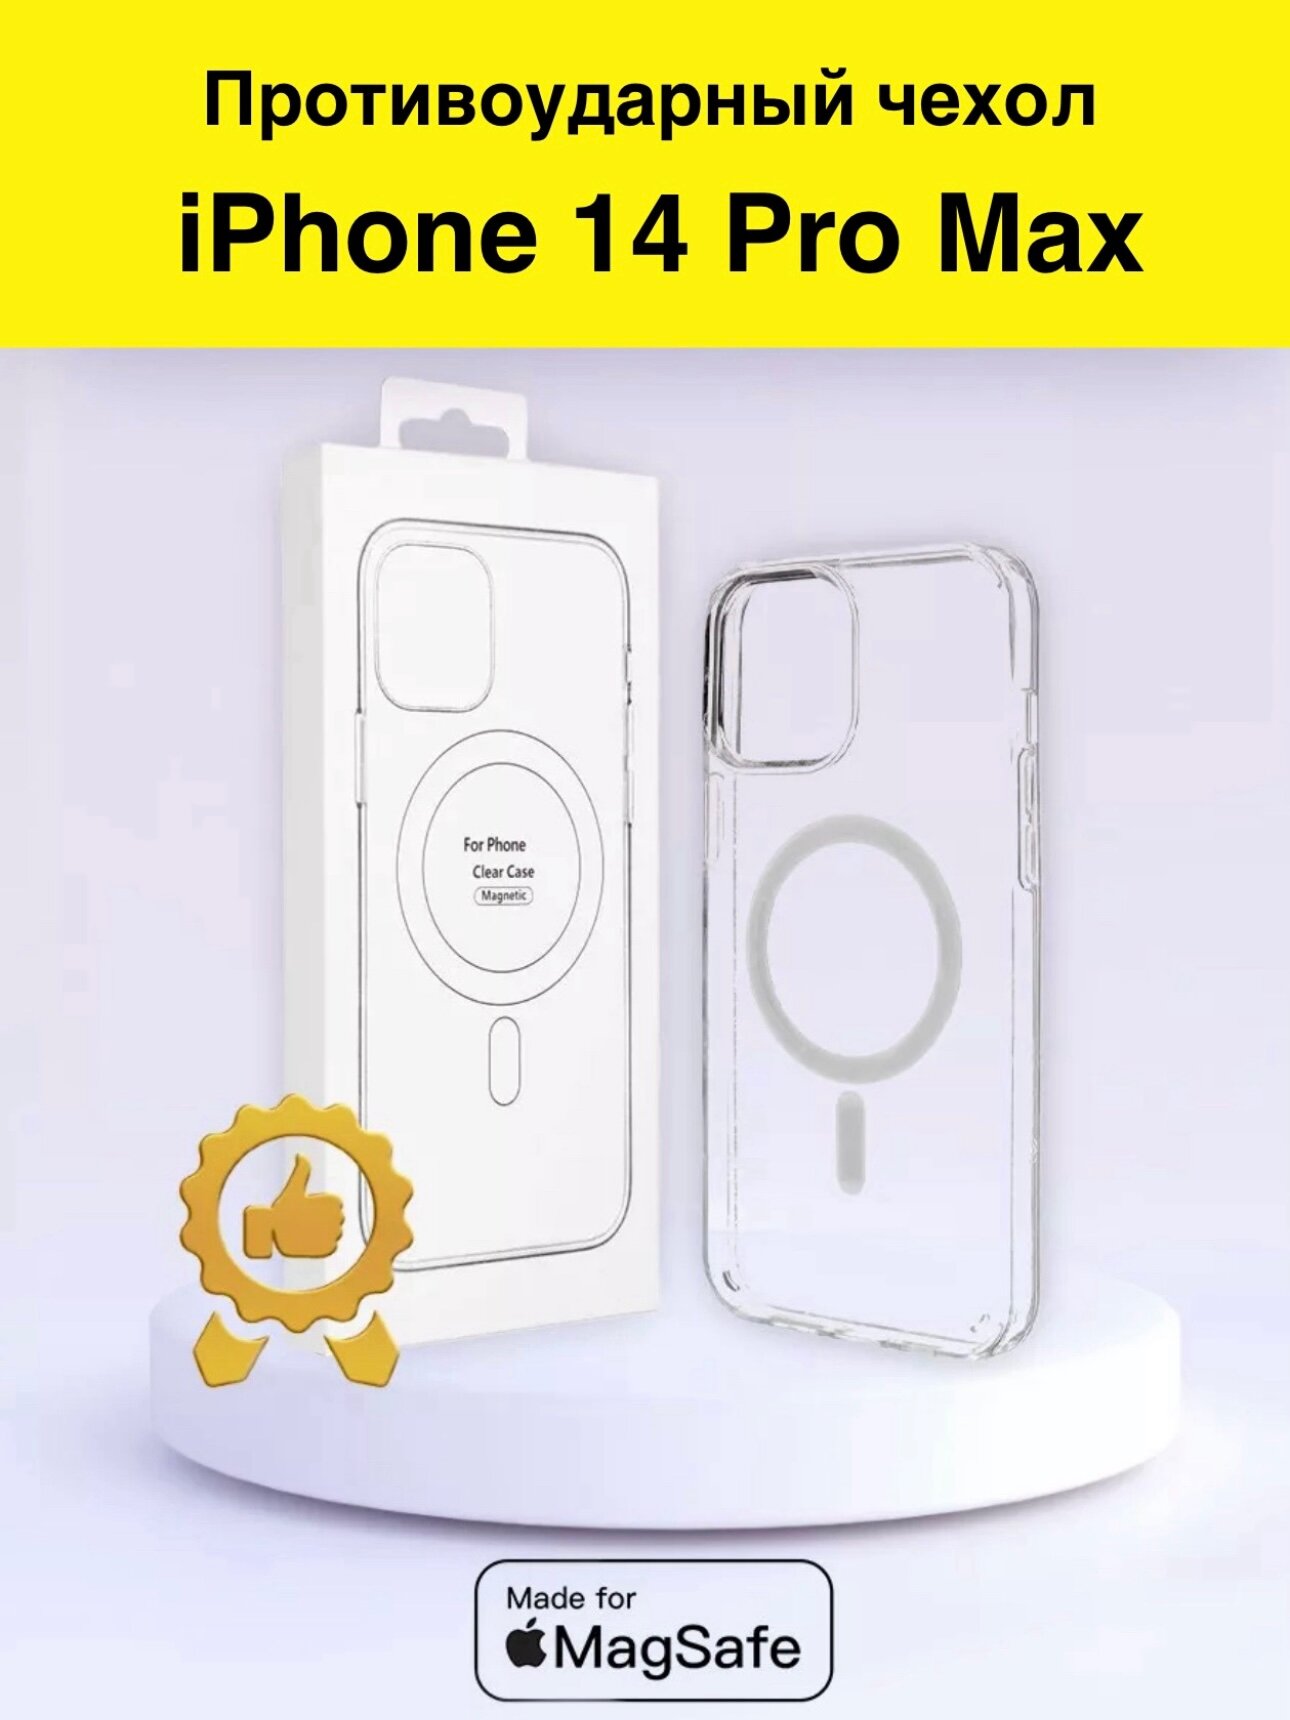 Чехол для iPhone 14 Pro Max с MagSafe прозрачный противоударный